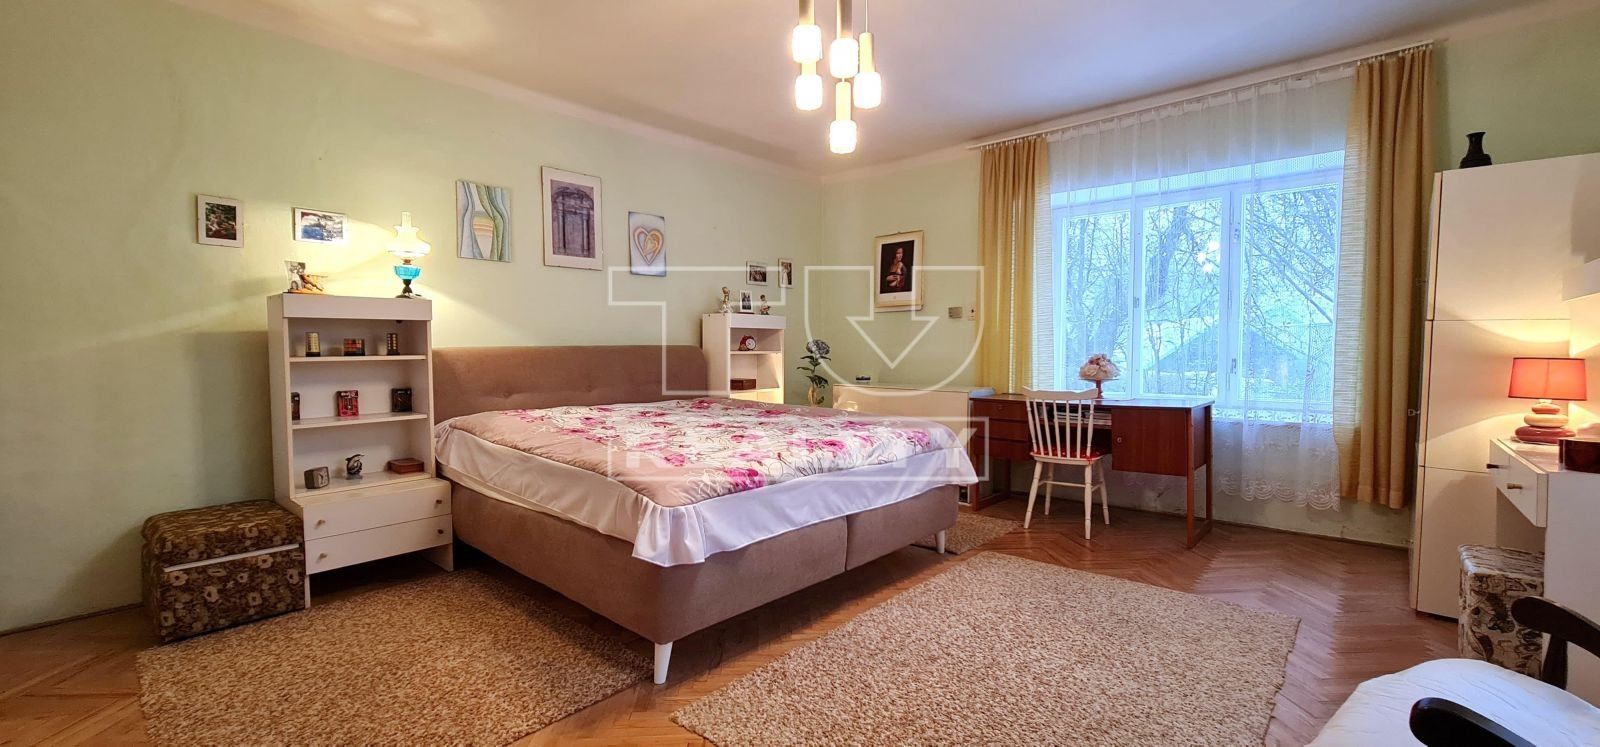 TUreality ponúka: Na predaj veľký dom v historickom meste Kremnica s rôznymi možnosťami využitia